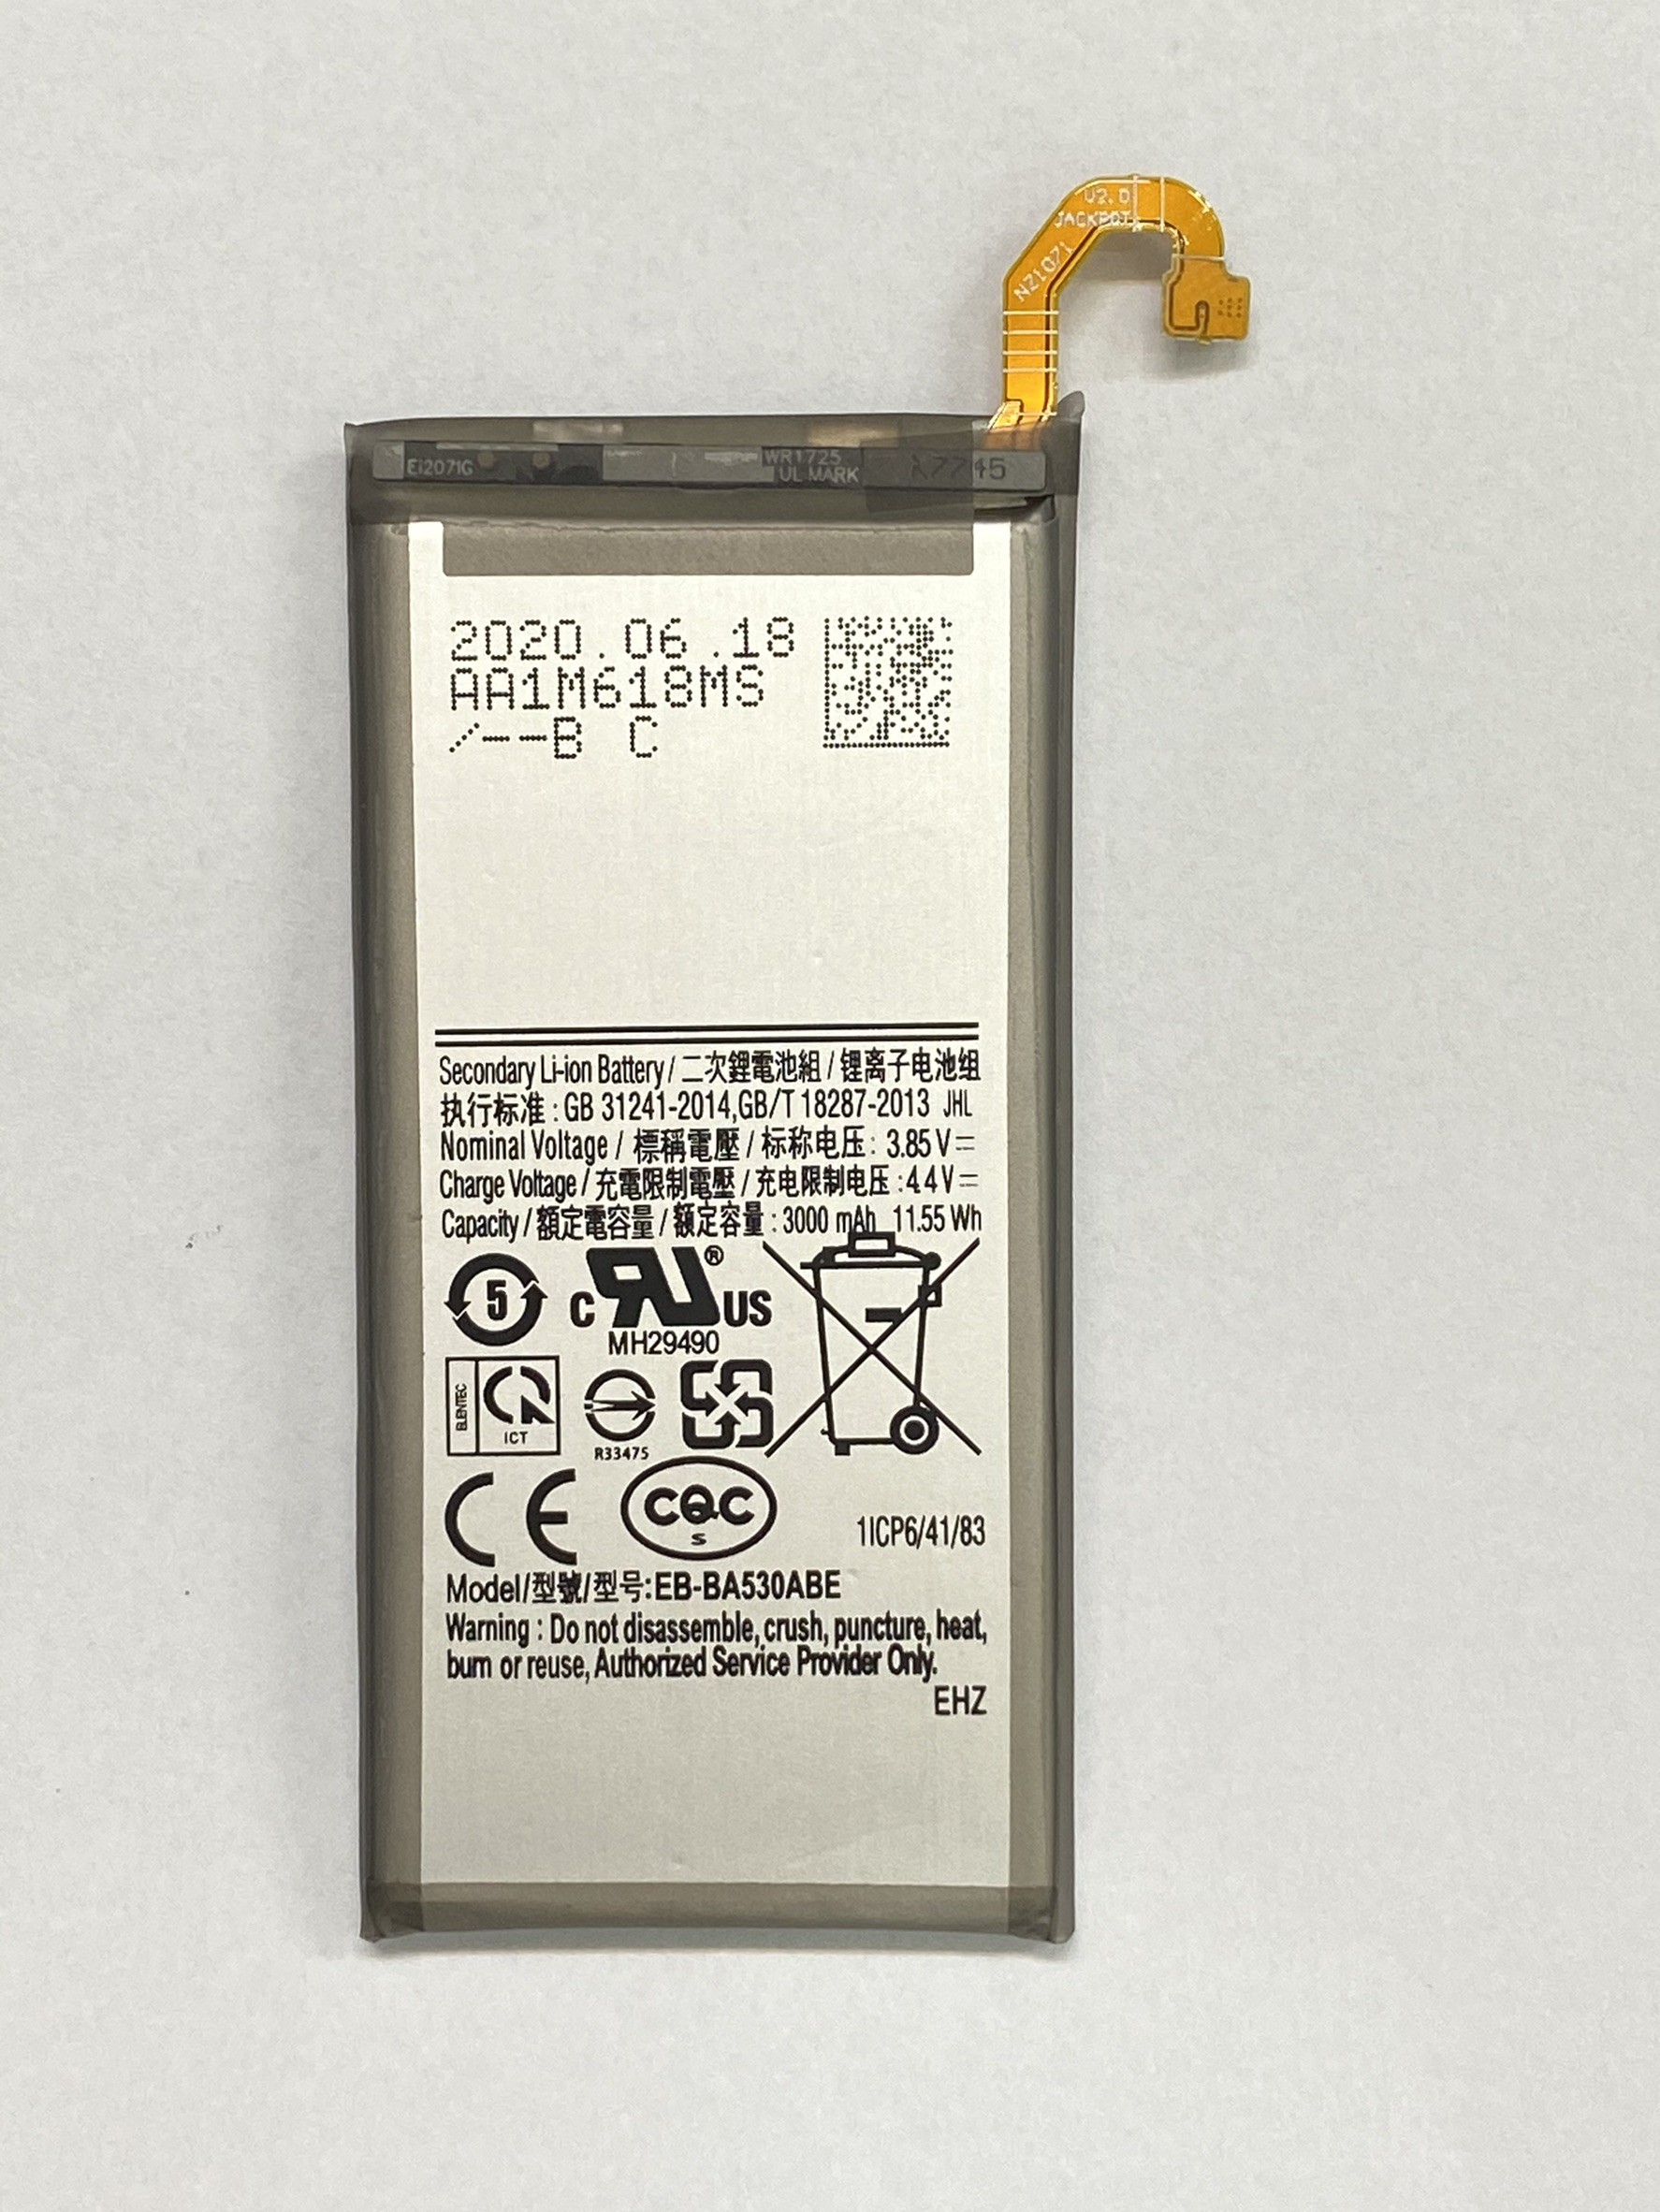 SAM-A530(A8-2018)-電池